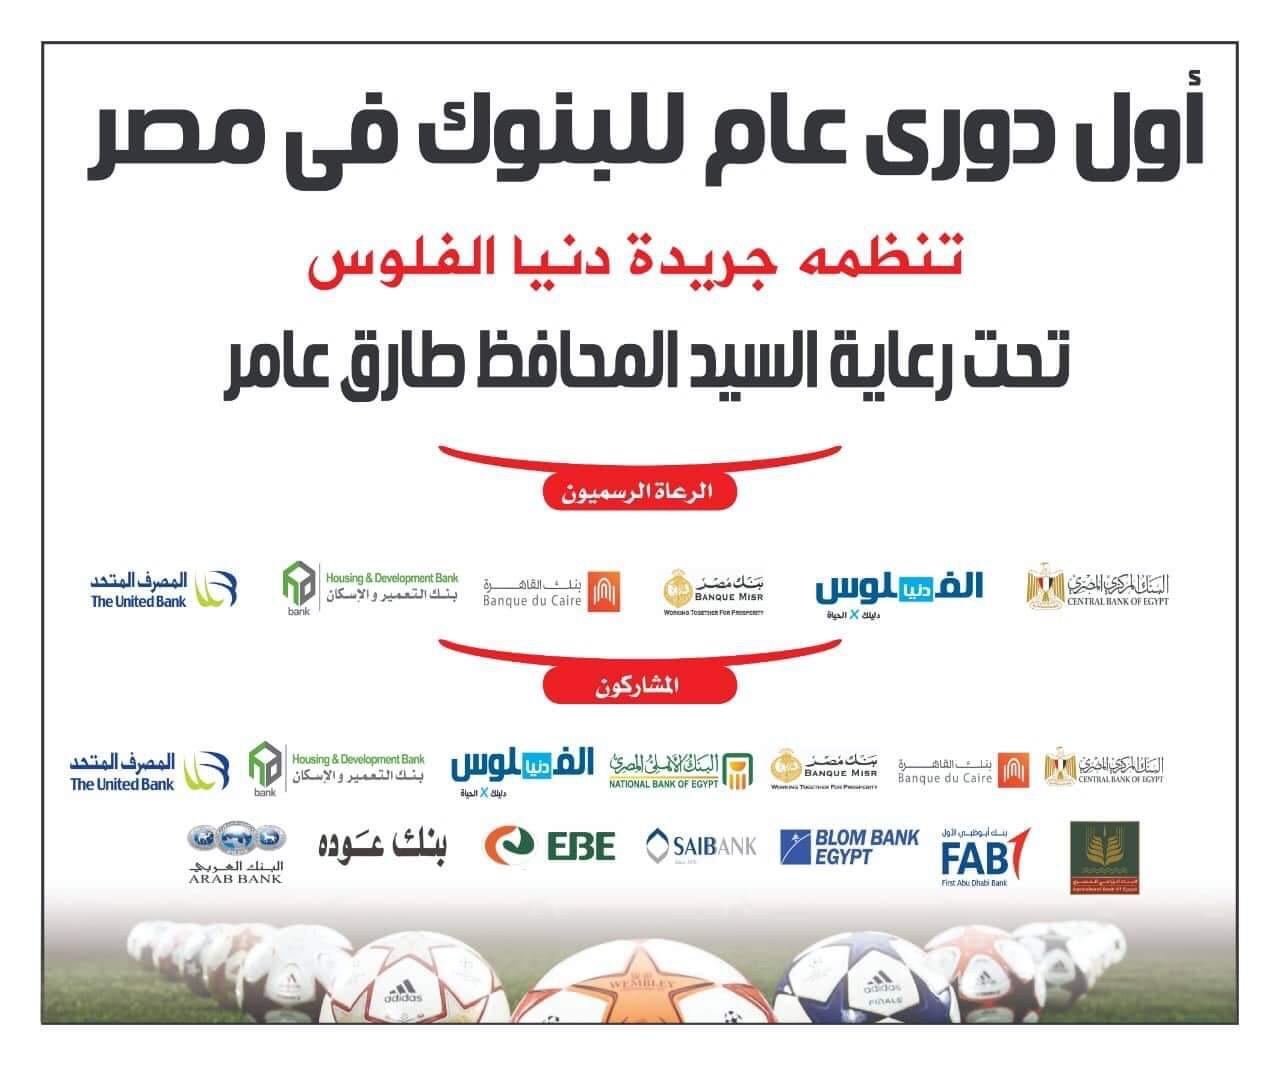 غداً انطلاق أول دوري عام للبنوك في مصر تحت رعاية طارق عامر